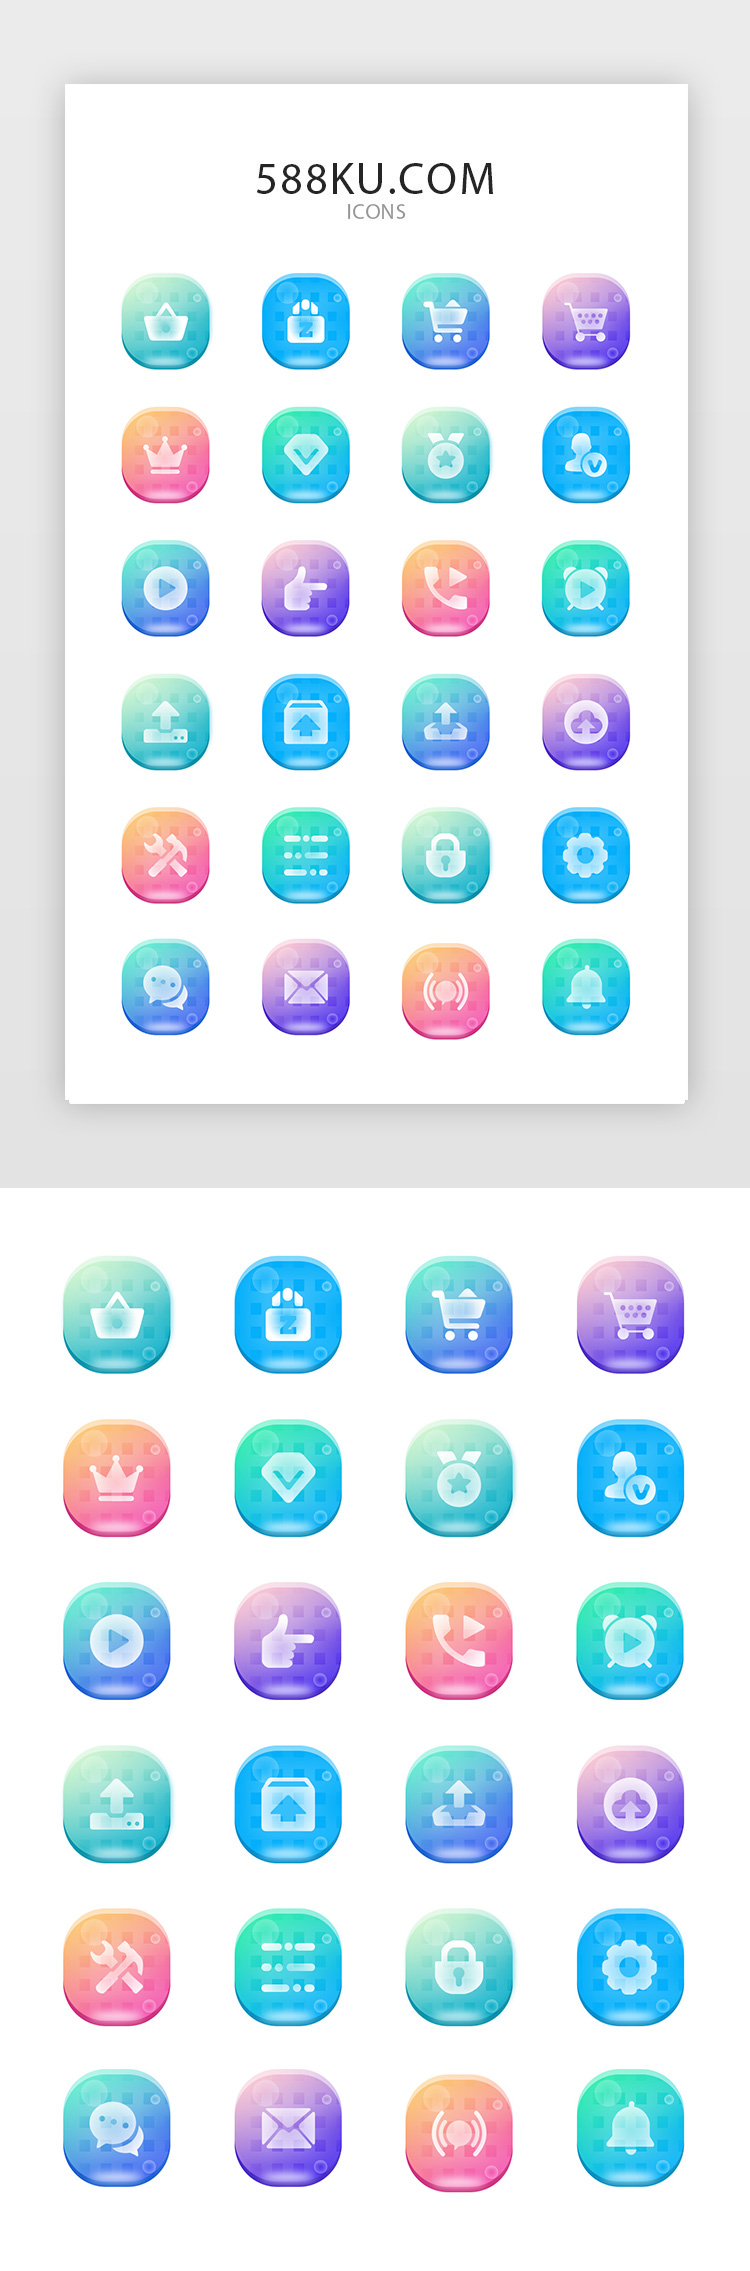 多色扁平化按钮常用矢量图标icon图片